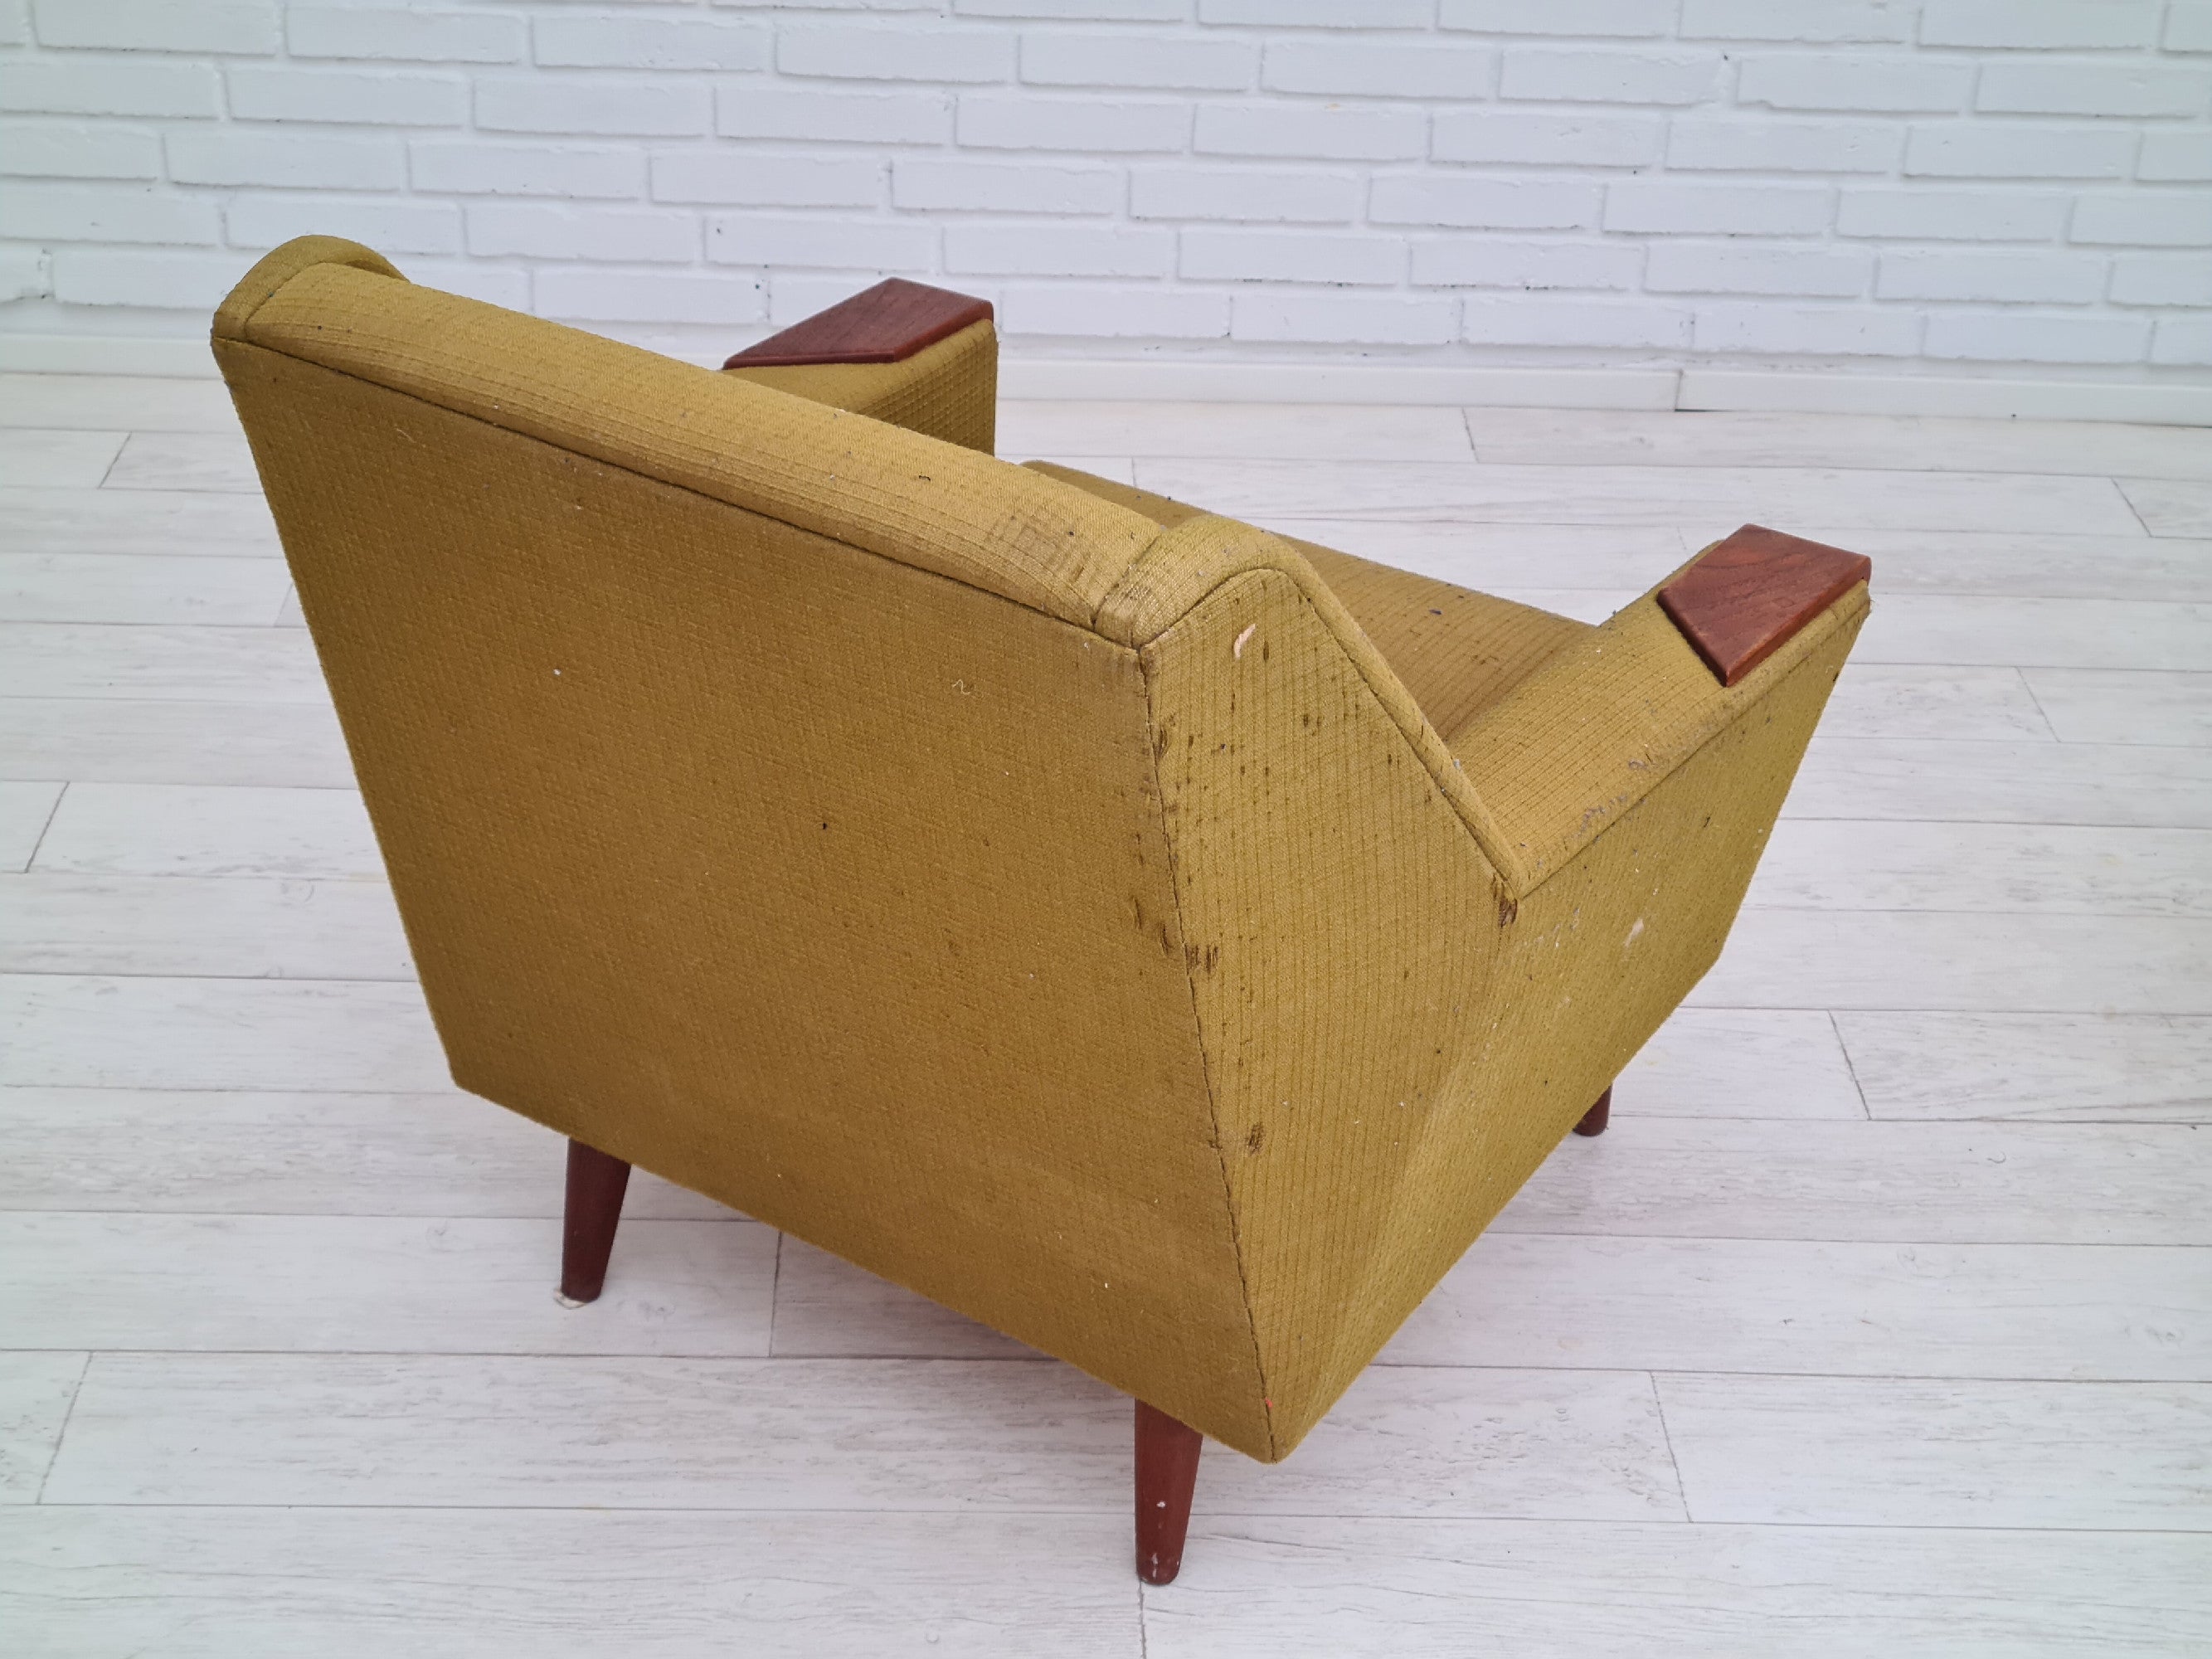 70erne, Dansk sofasæt, 3 pers. sofa, to lænestole, teaktræ, til renovering